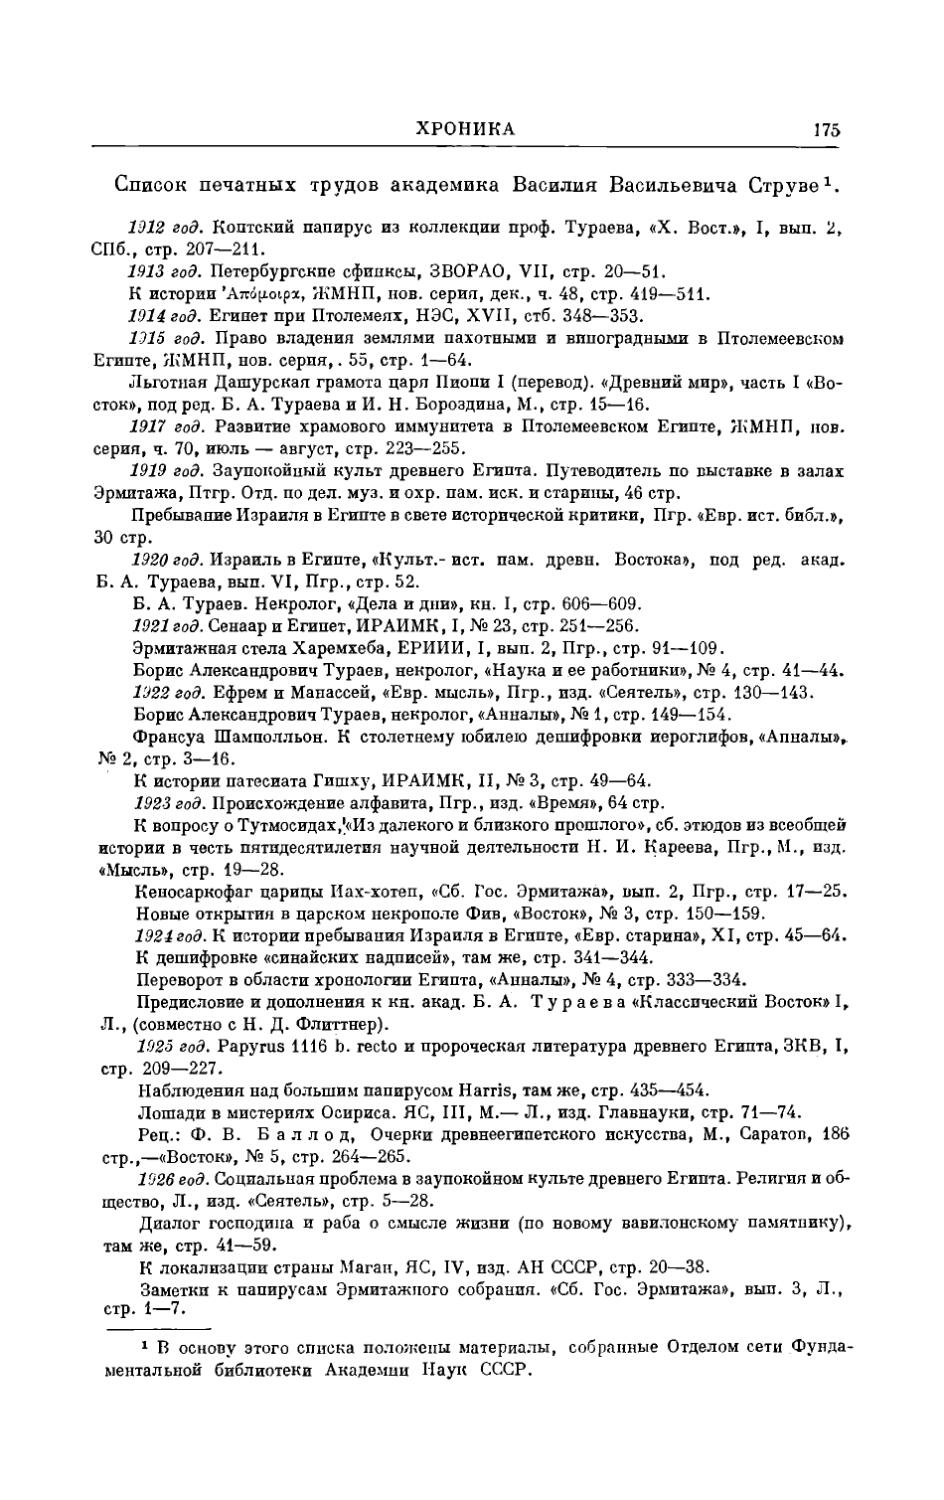 Список печатных трудов акад. В.В. Струве